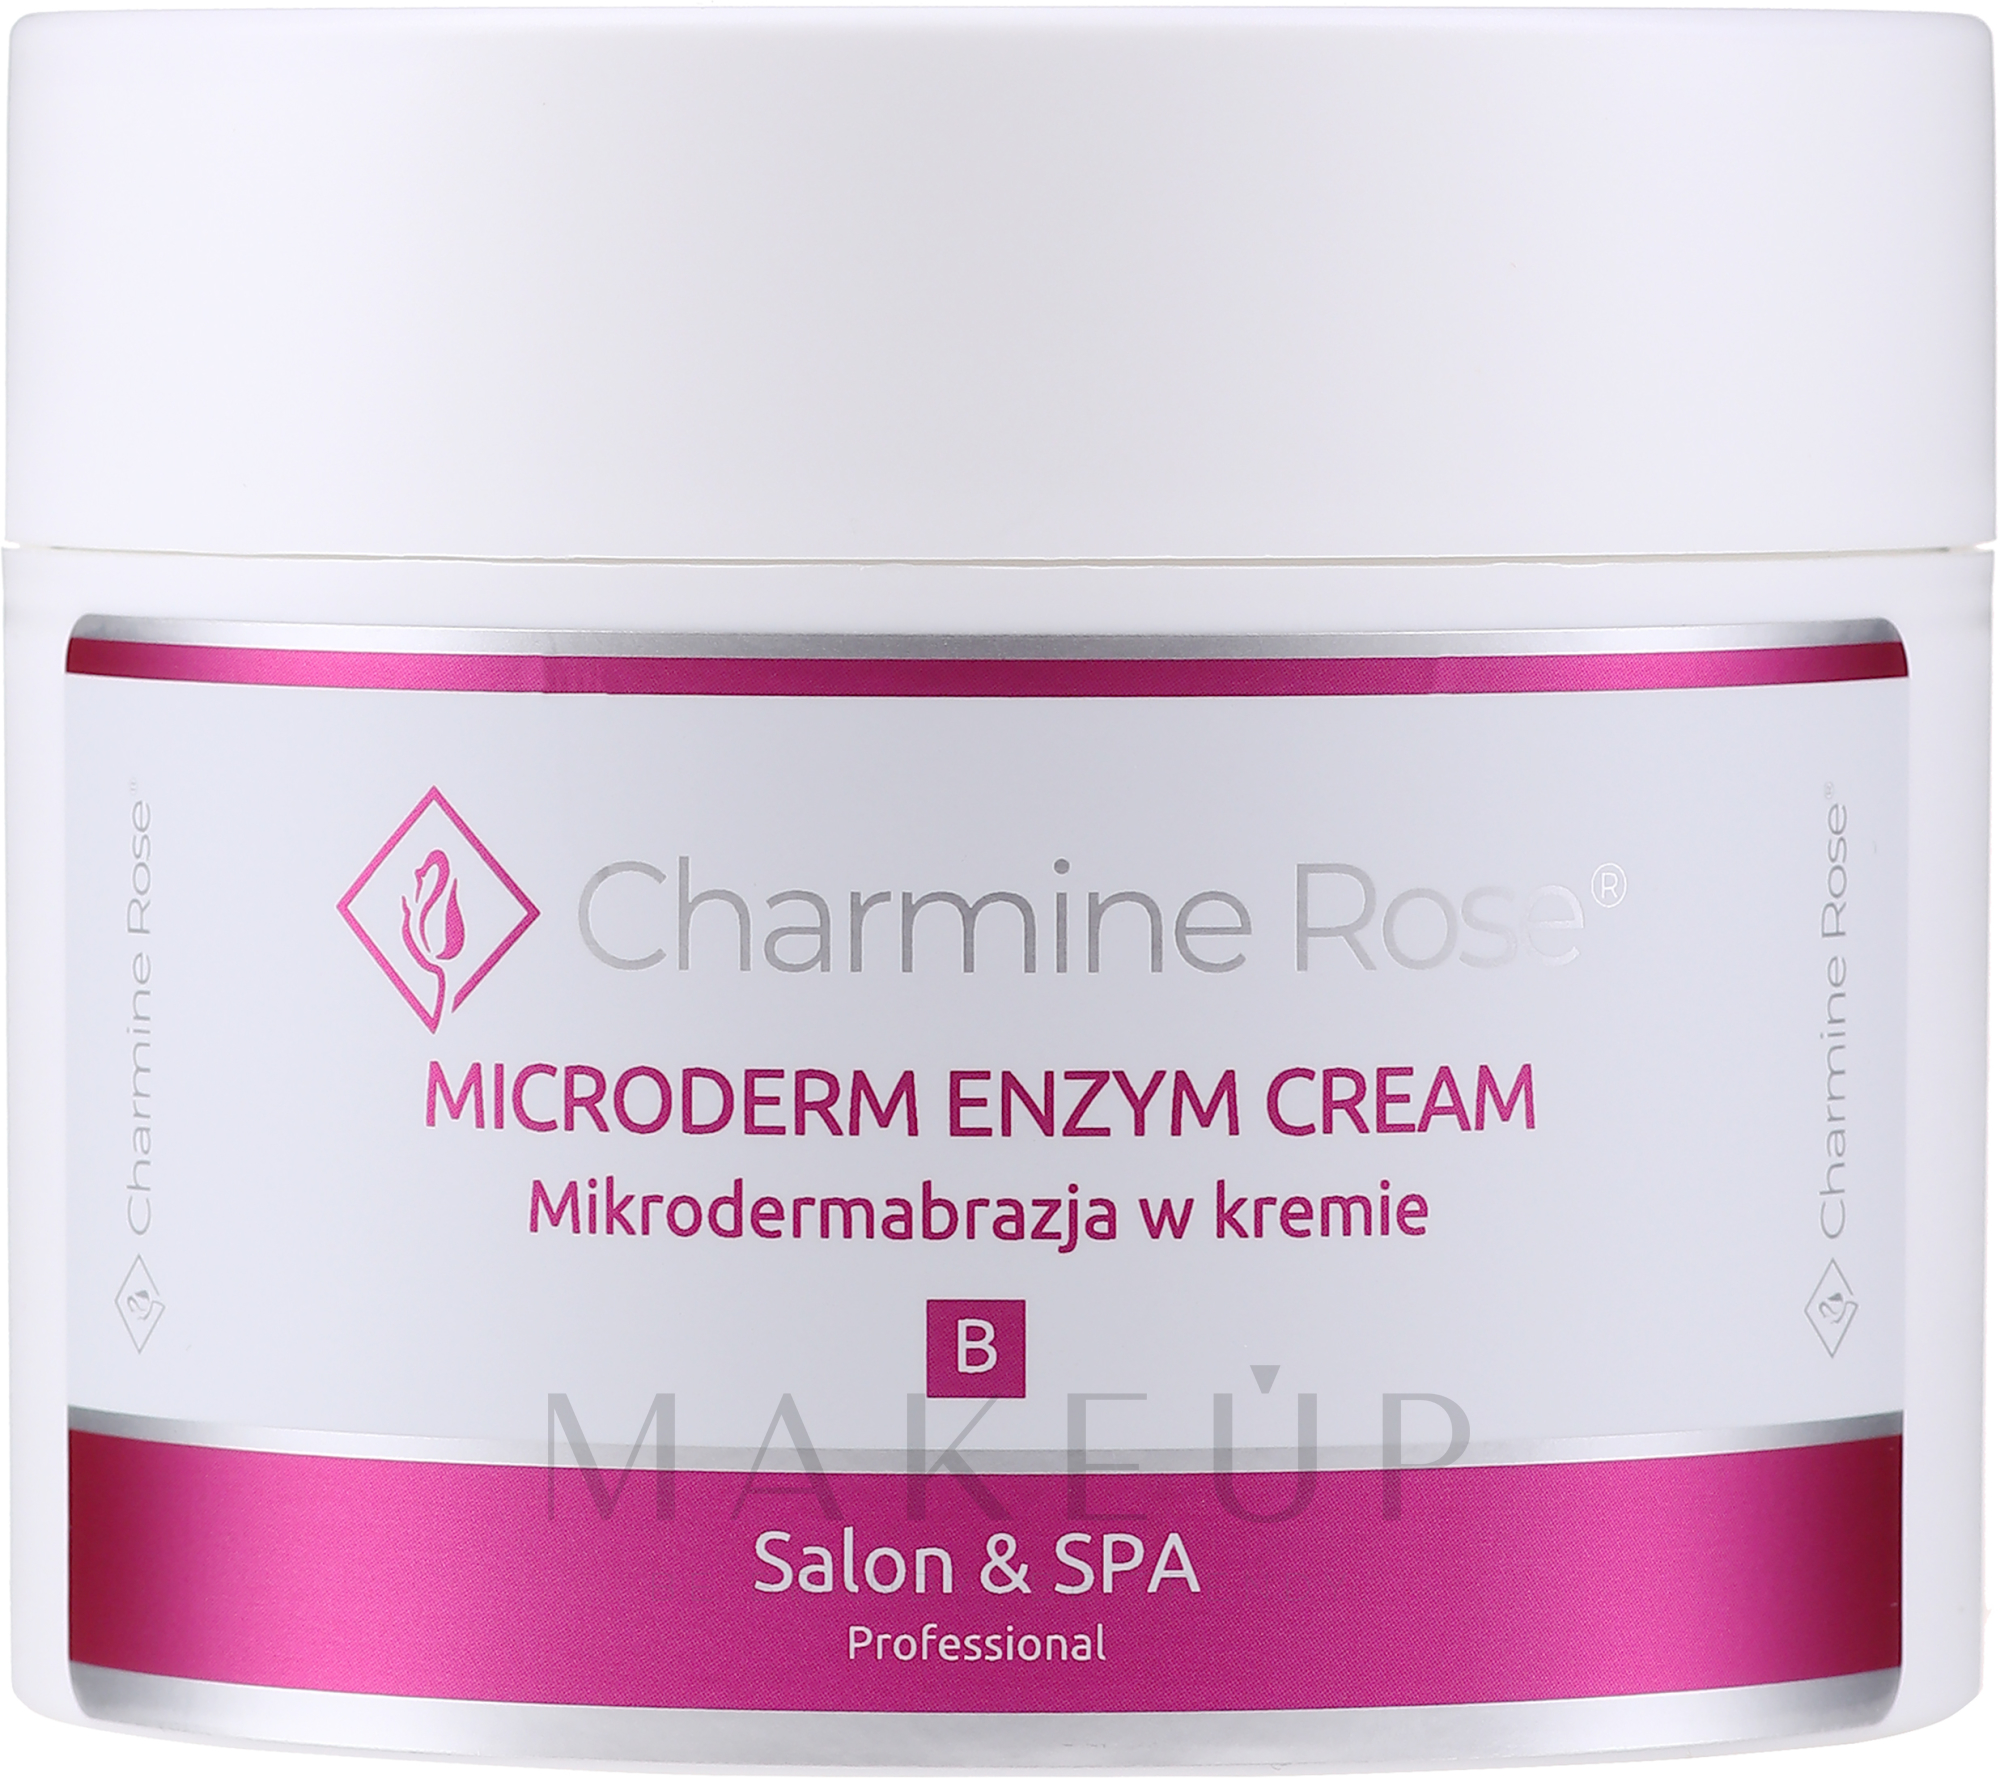 Enzymatische und mechanische Gesichtspeeling-Creme - Charmine Rose Microderm Enzym Cream — Bild 60 ml